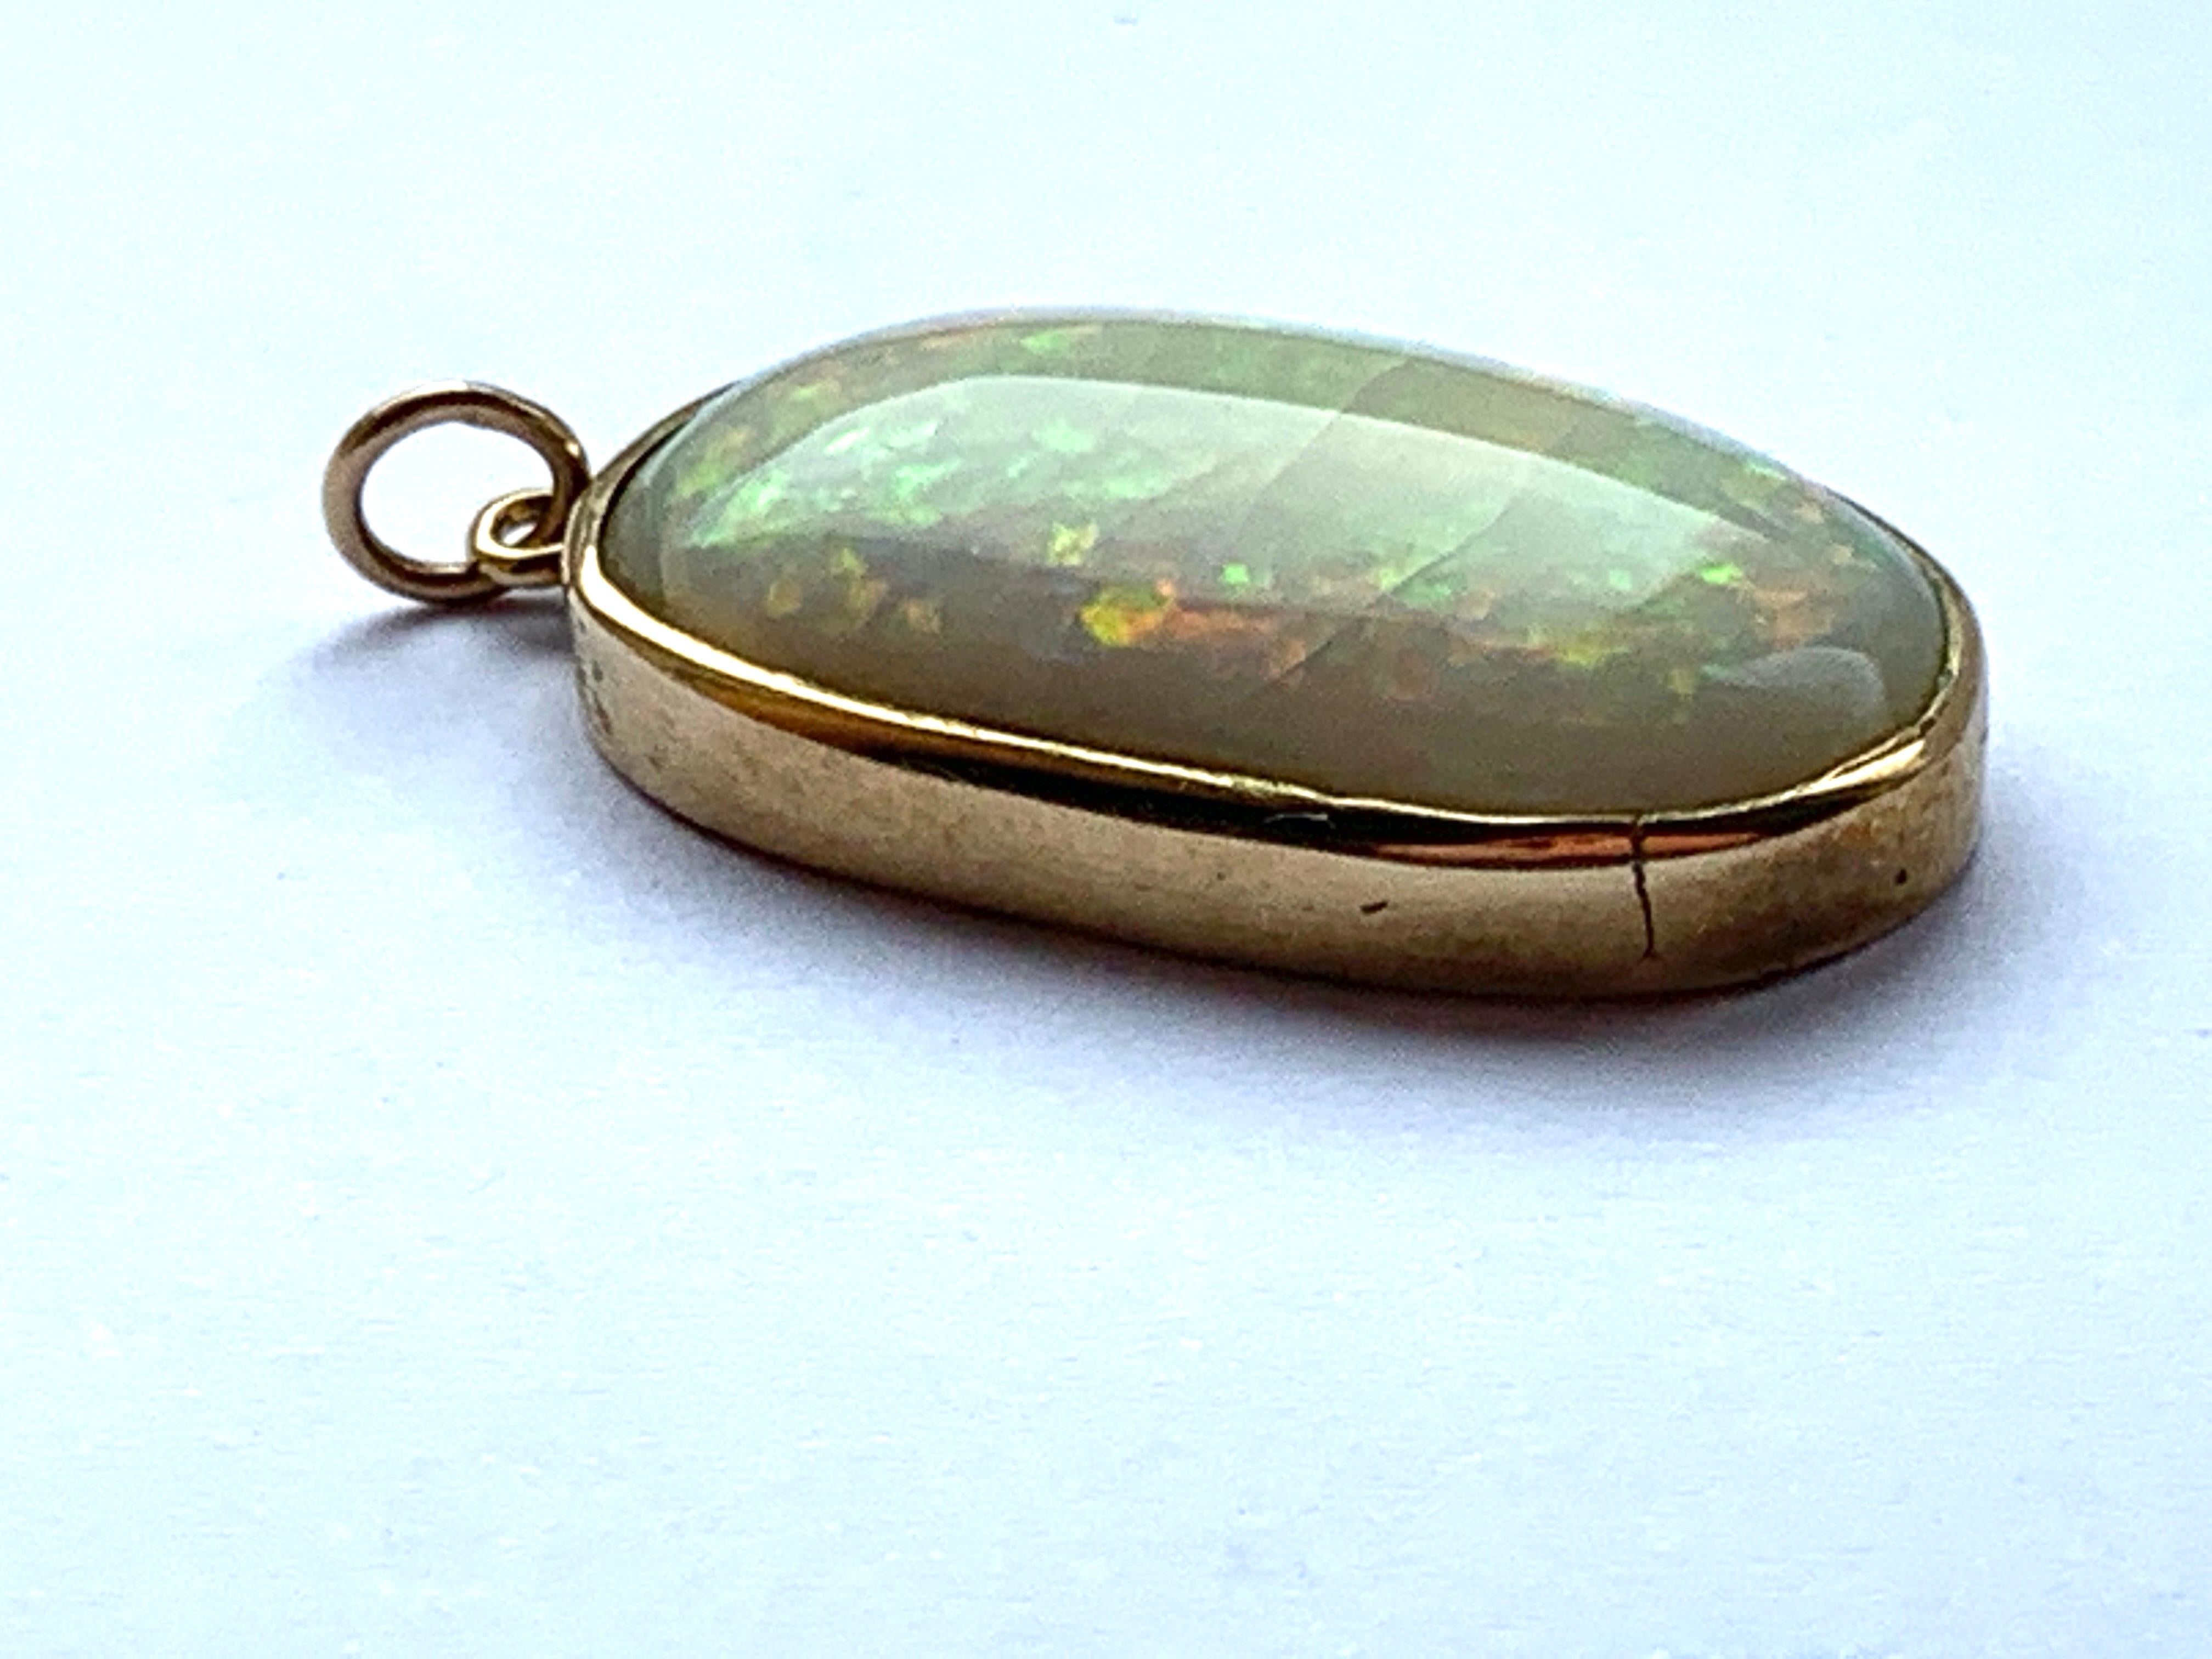 Schöner natürlicher Opal
gefasst in 9ct Goldfassung
mit rissigen inneren Frakturen
Größe ca. 2,5cm x 1,5cm x 7mm
Gewicht 4.93 Gramm